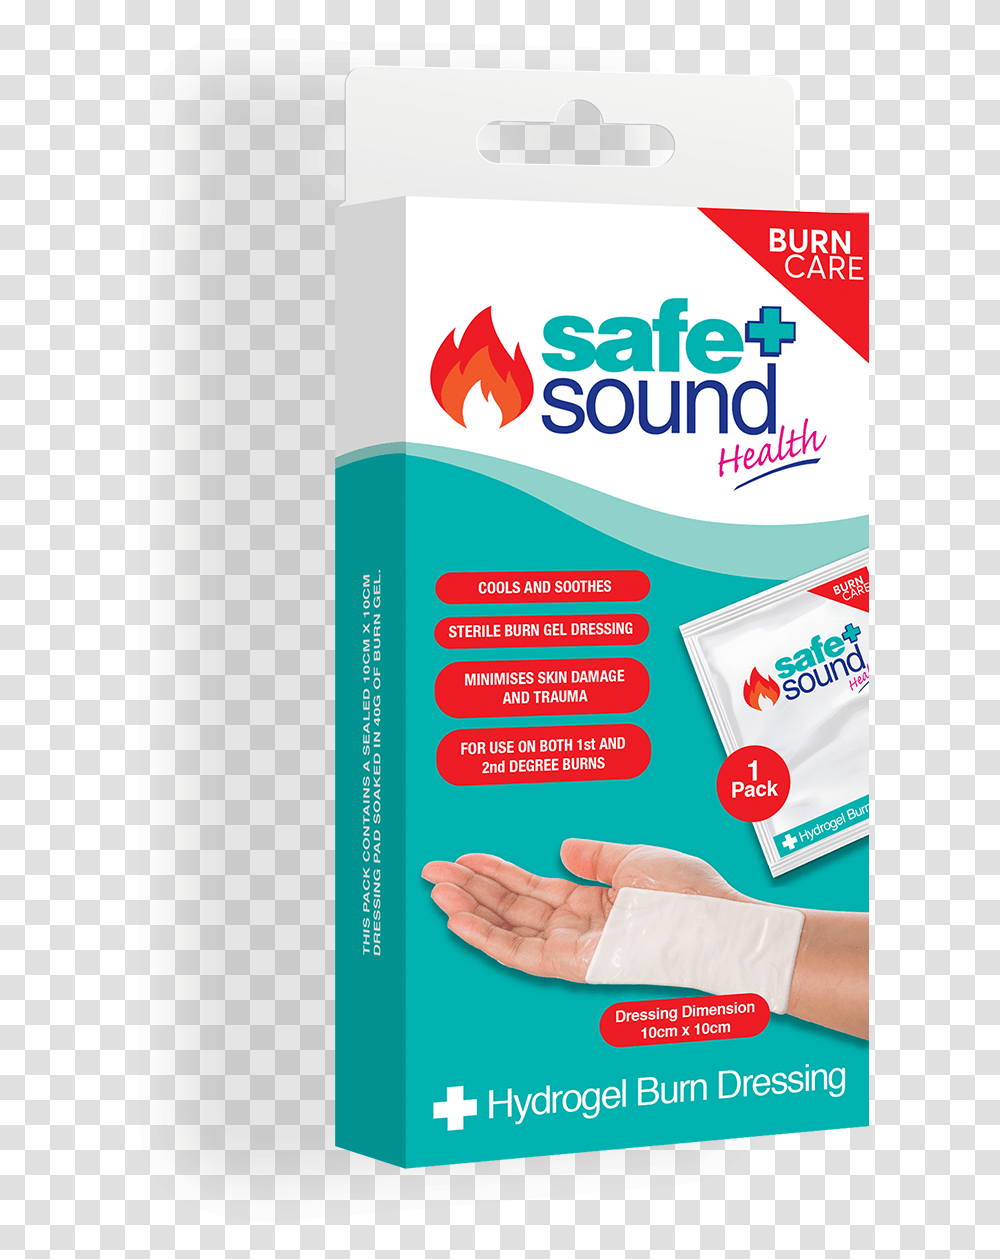 Safe And Sound Health Hydrogel Burn Dressing Szemvegtrl, Poster, Advertisement, Flyer, Paper Transparent Png